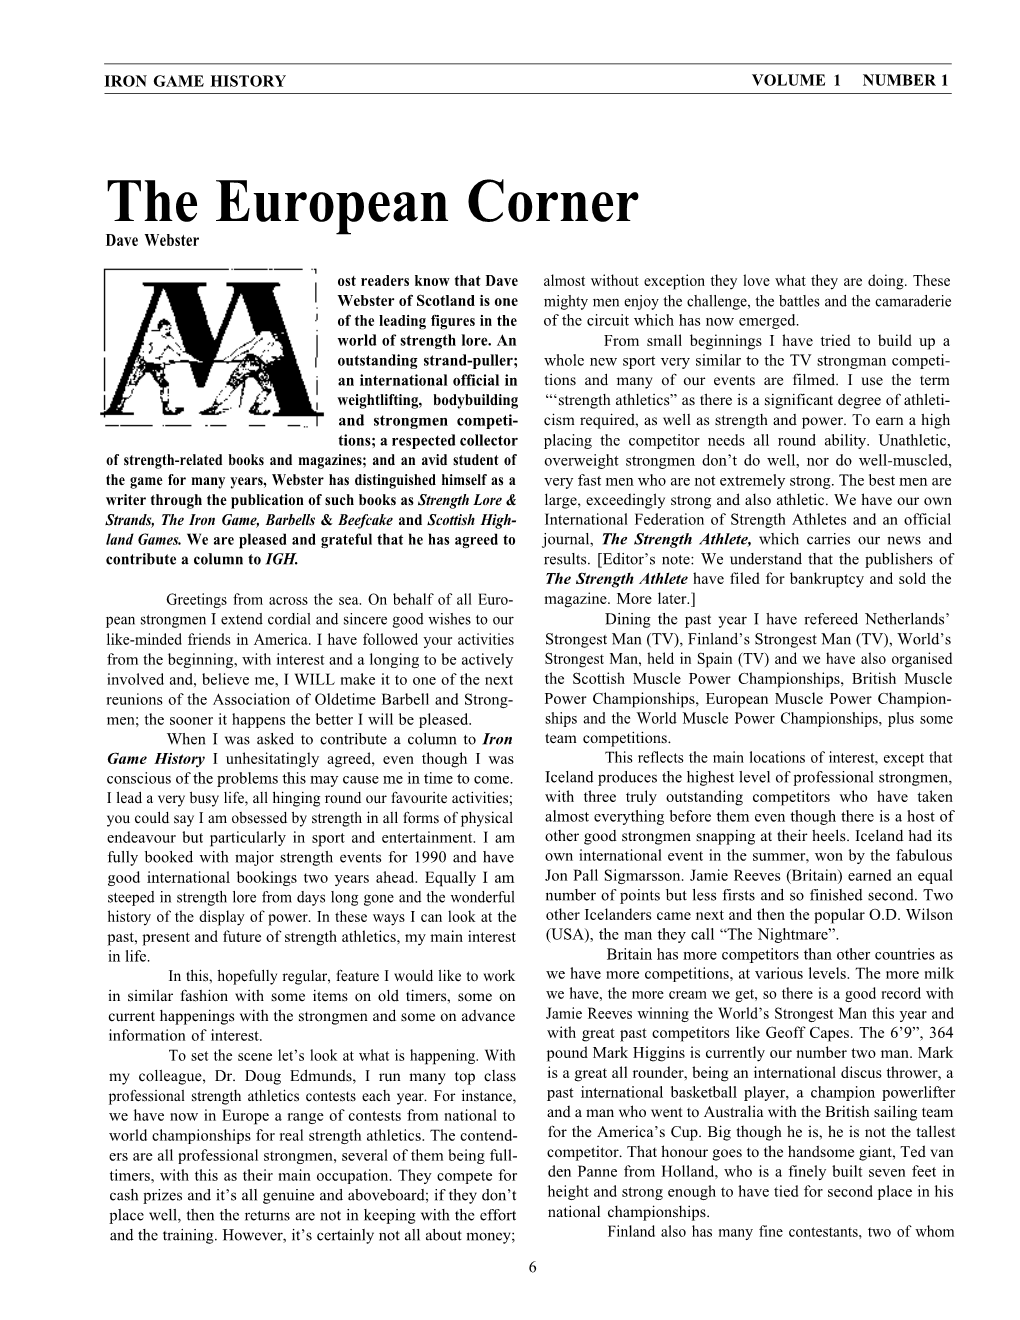 The European Corner Dave Webster